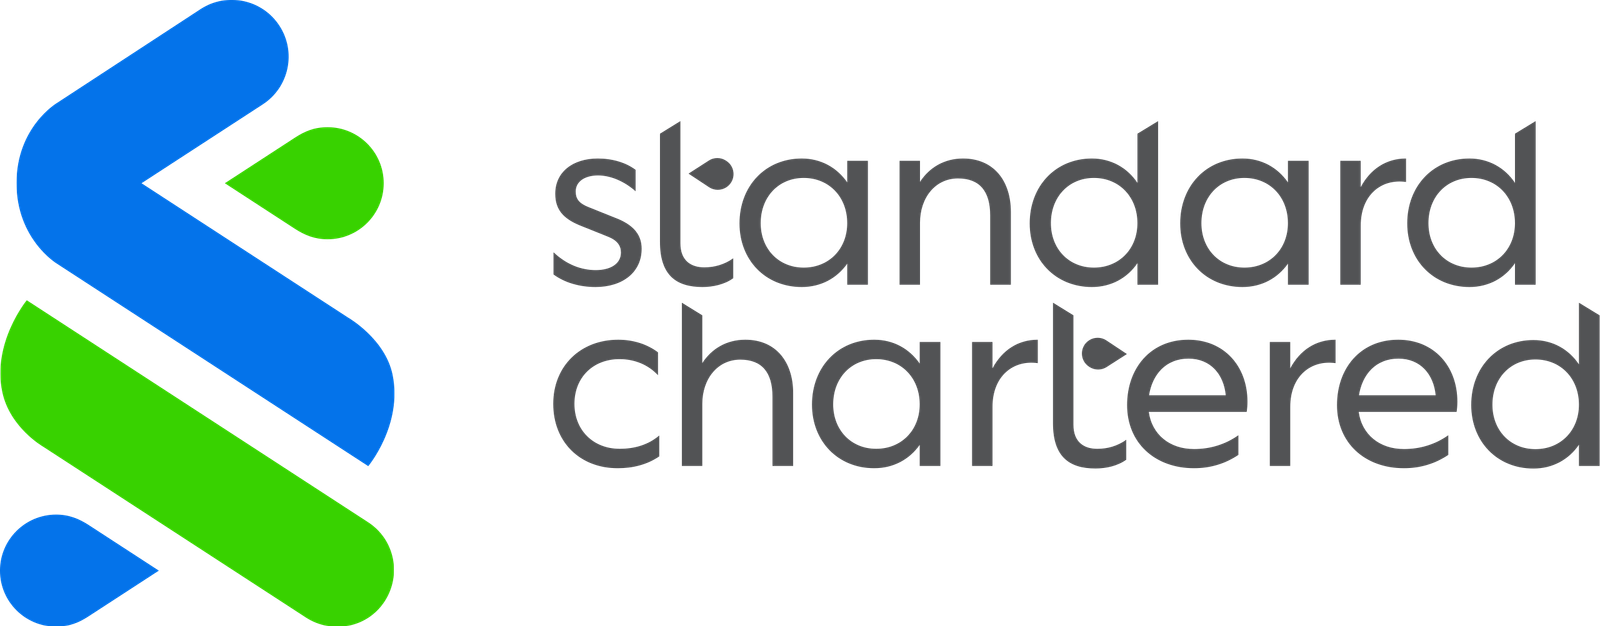 Standard_Chartered_(2021).svg